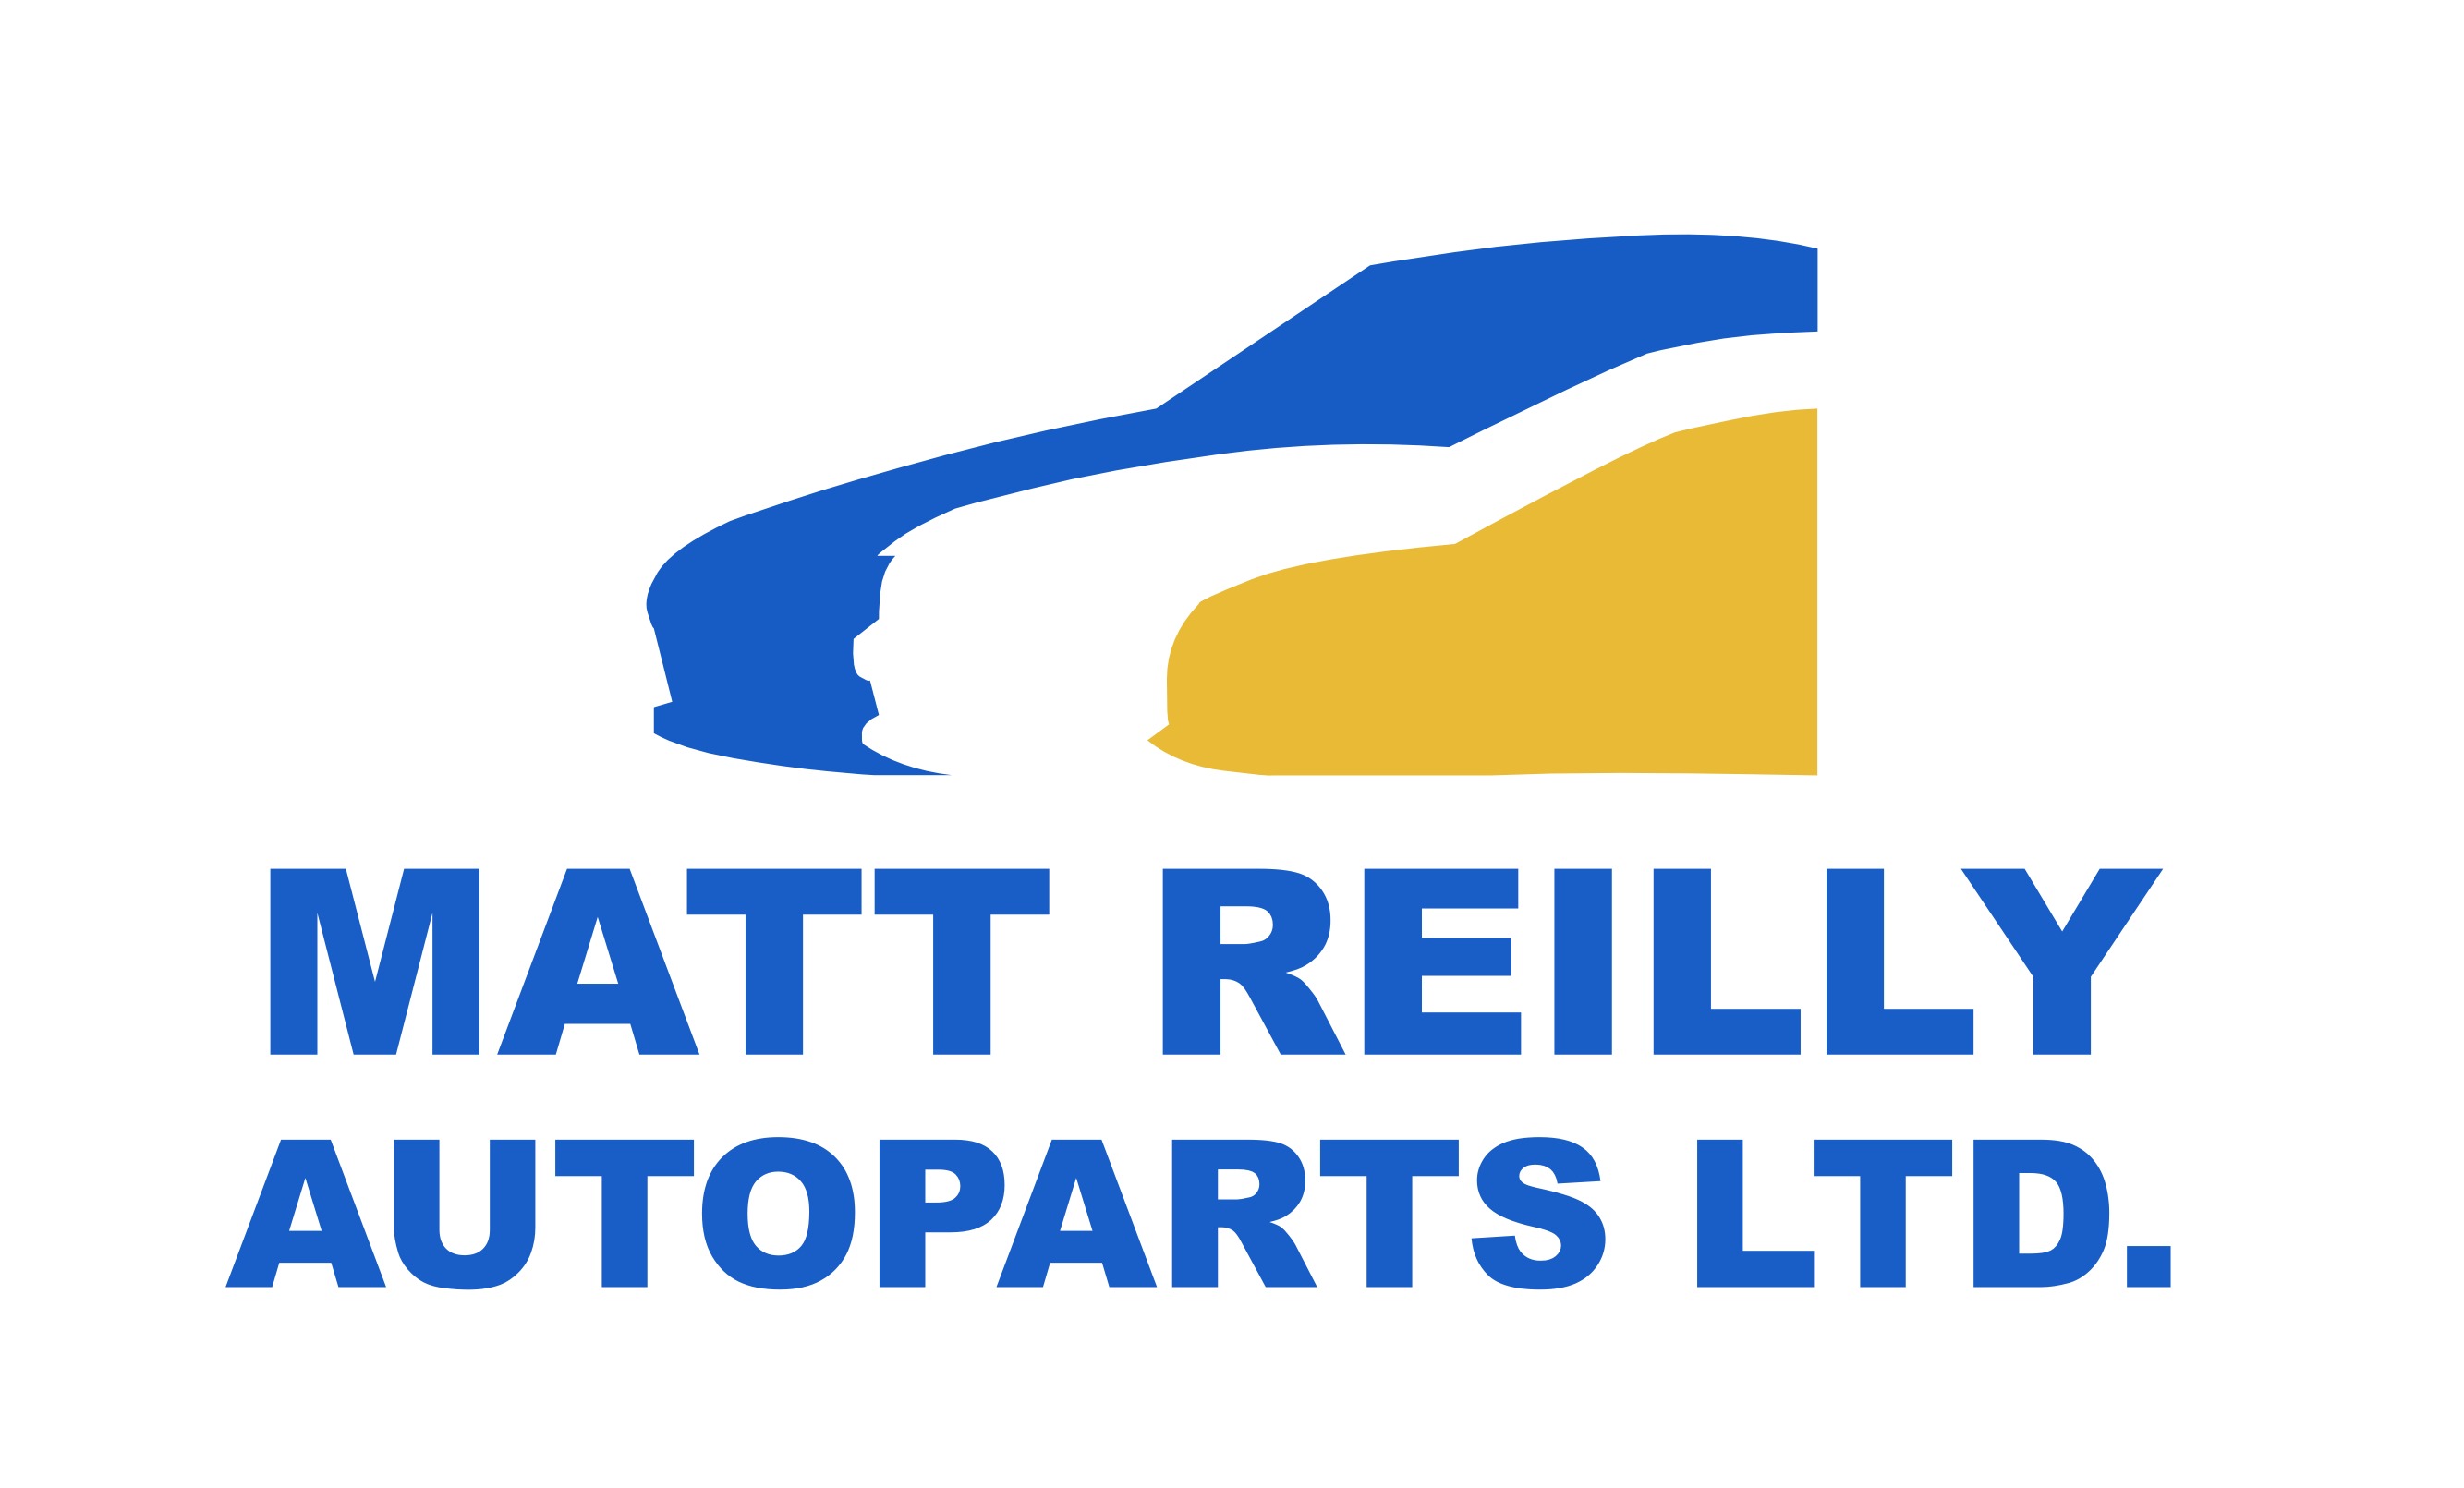 MATT REILLY AUTOPARTS LTD.